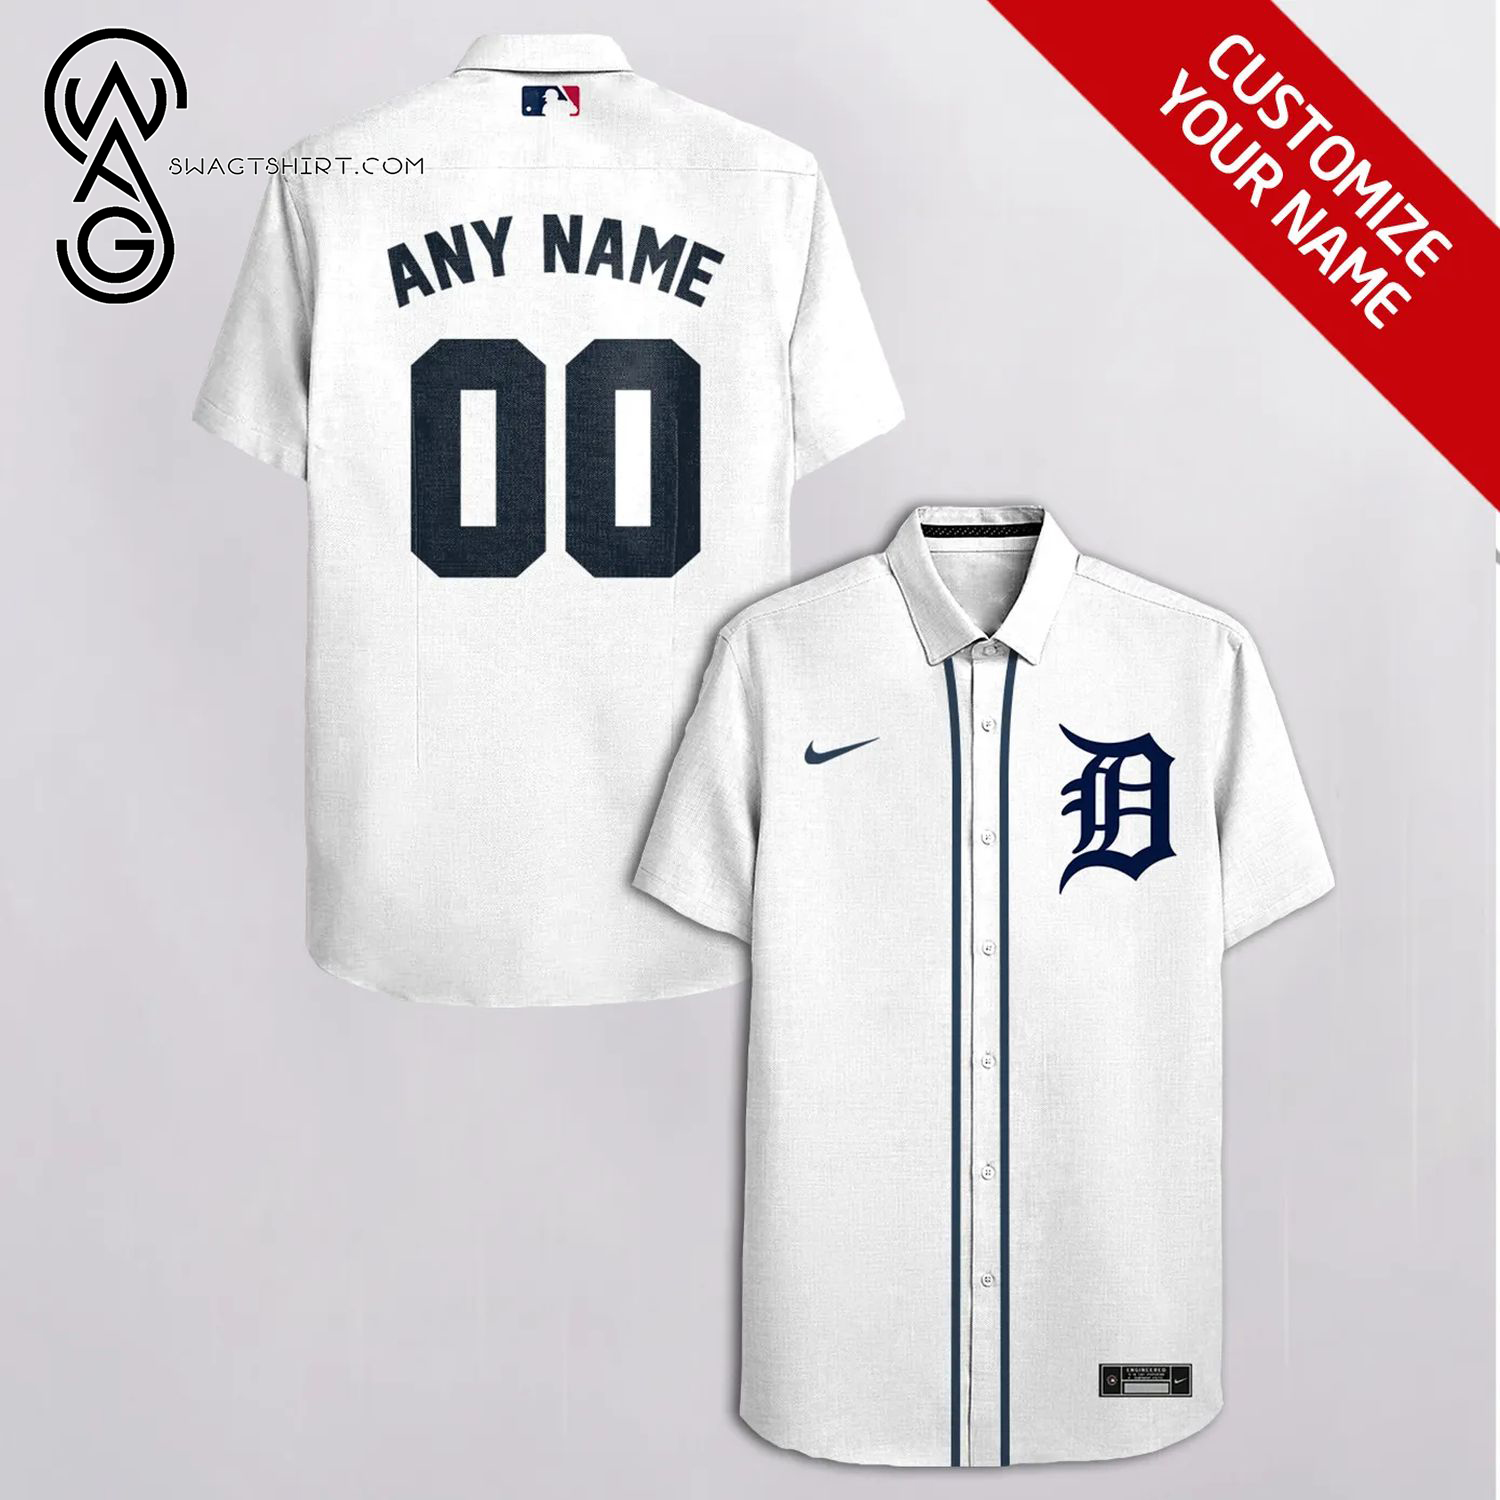 Detroit Tigers Major League Baseball Full Printing Personalized Hawaiian Shirt